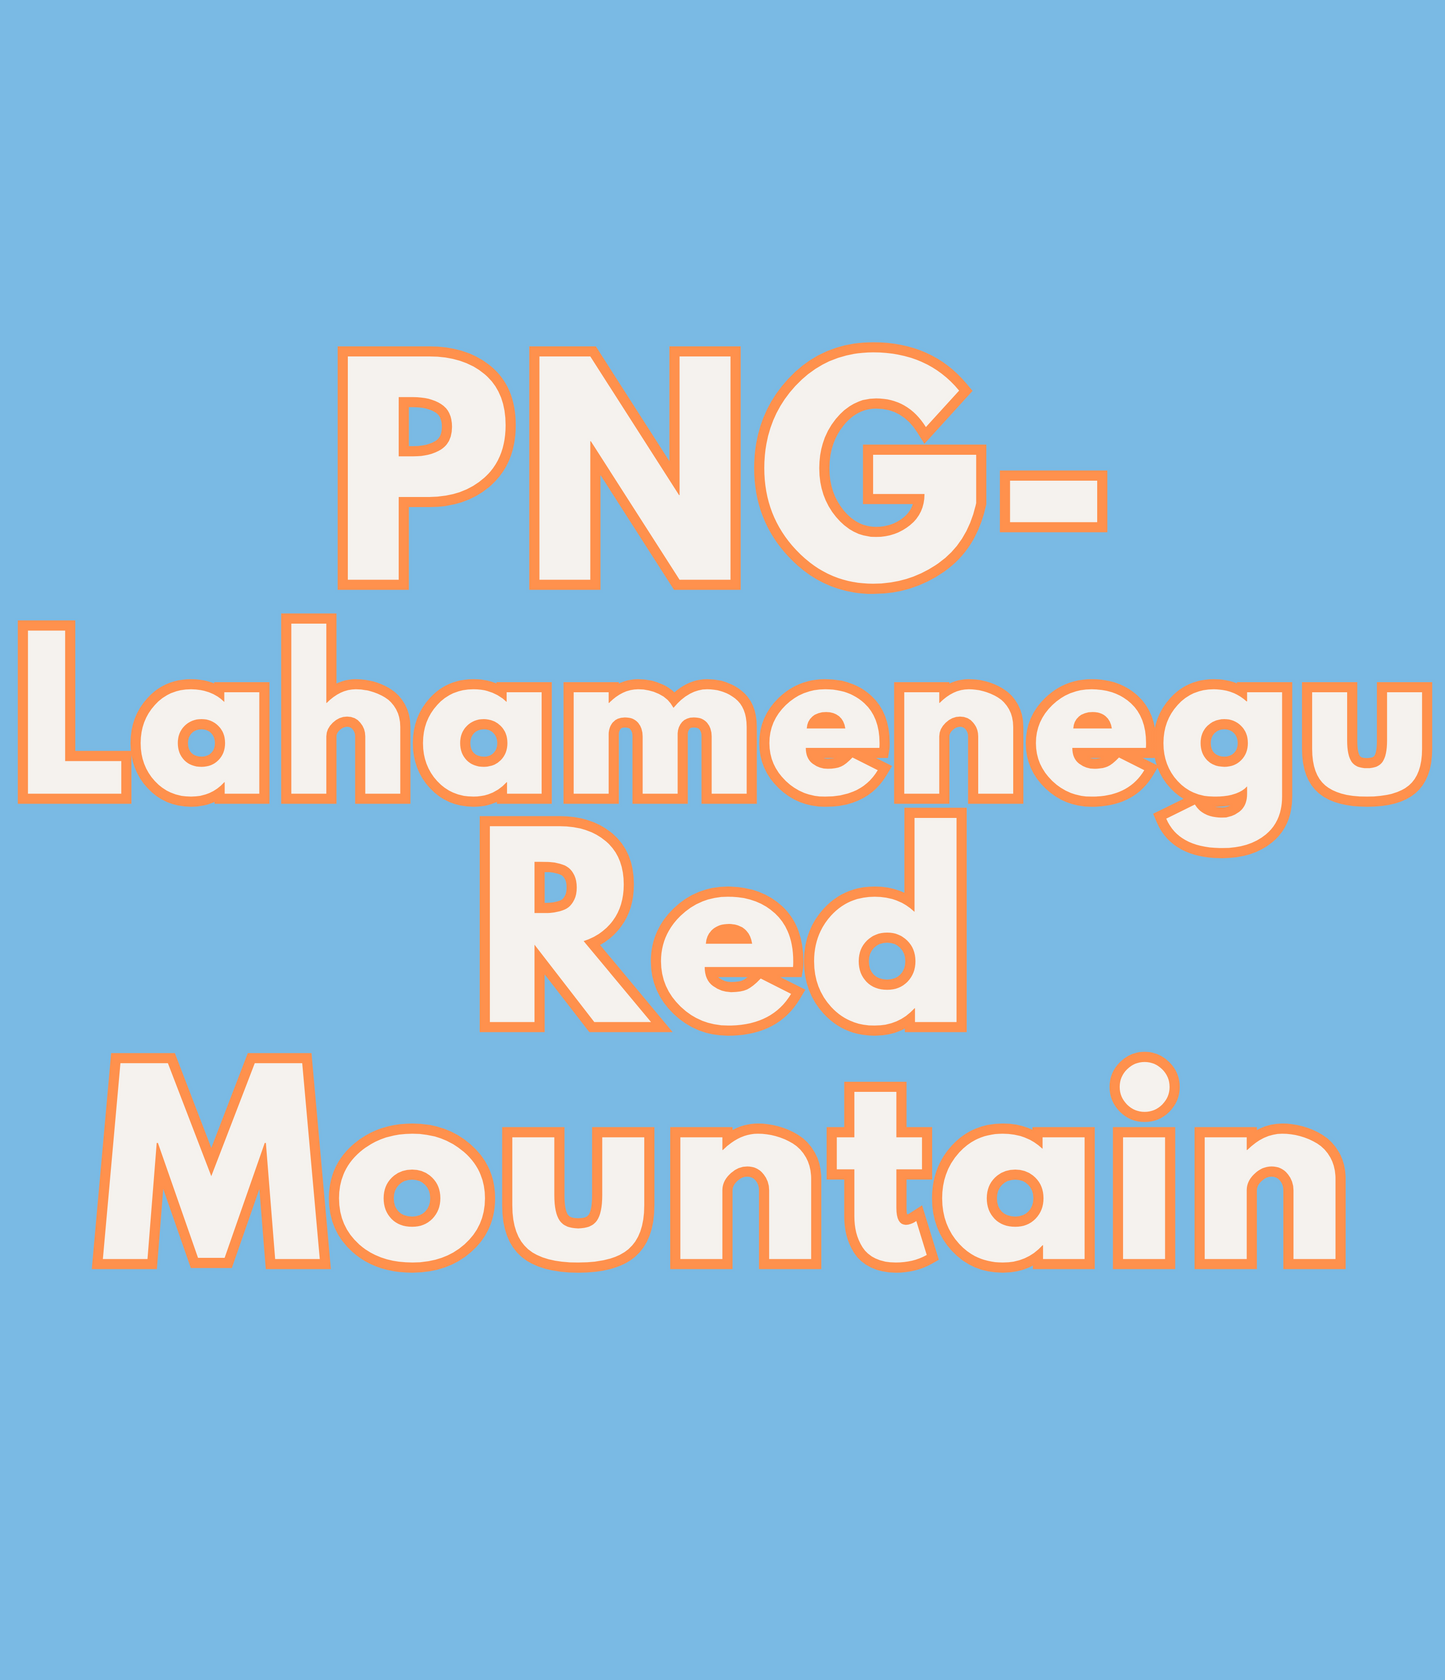 Papua New Guinea - Lahamenegu Red Mountain AX